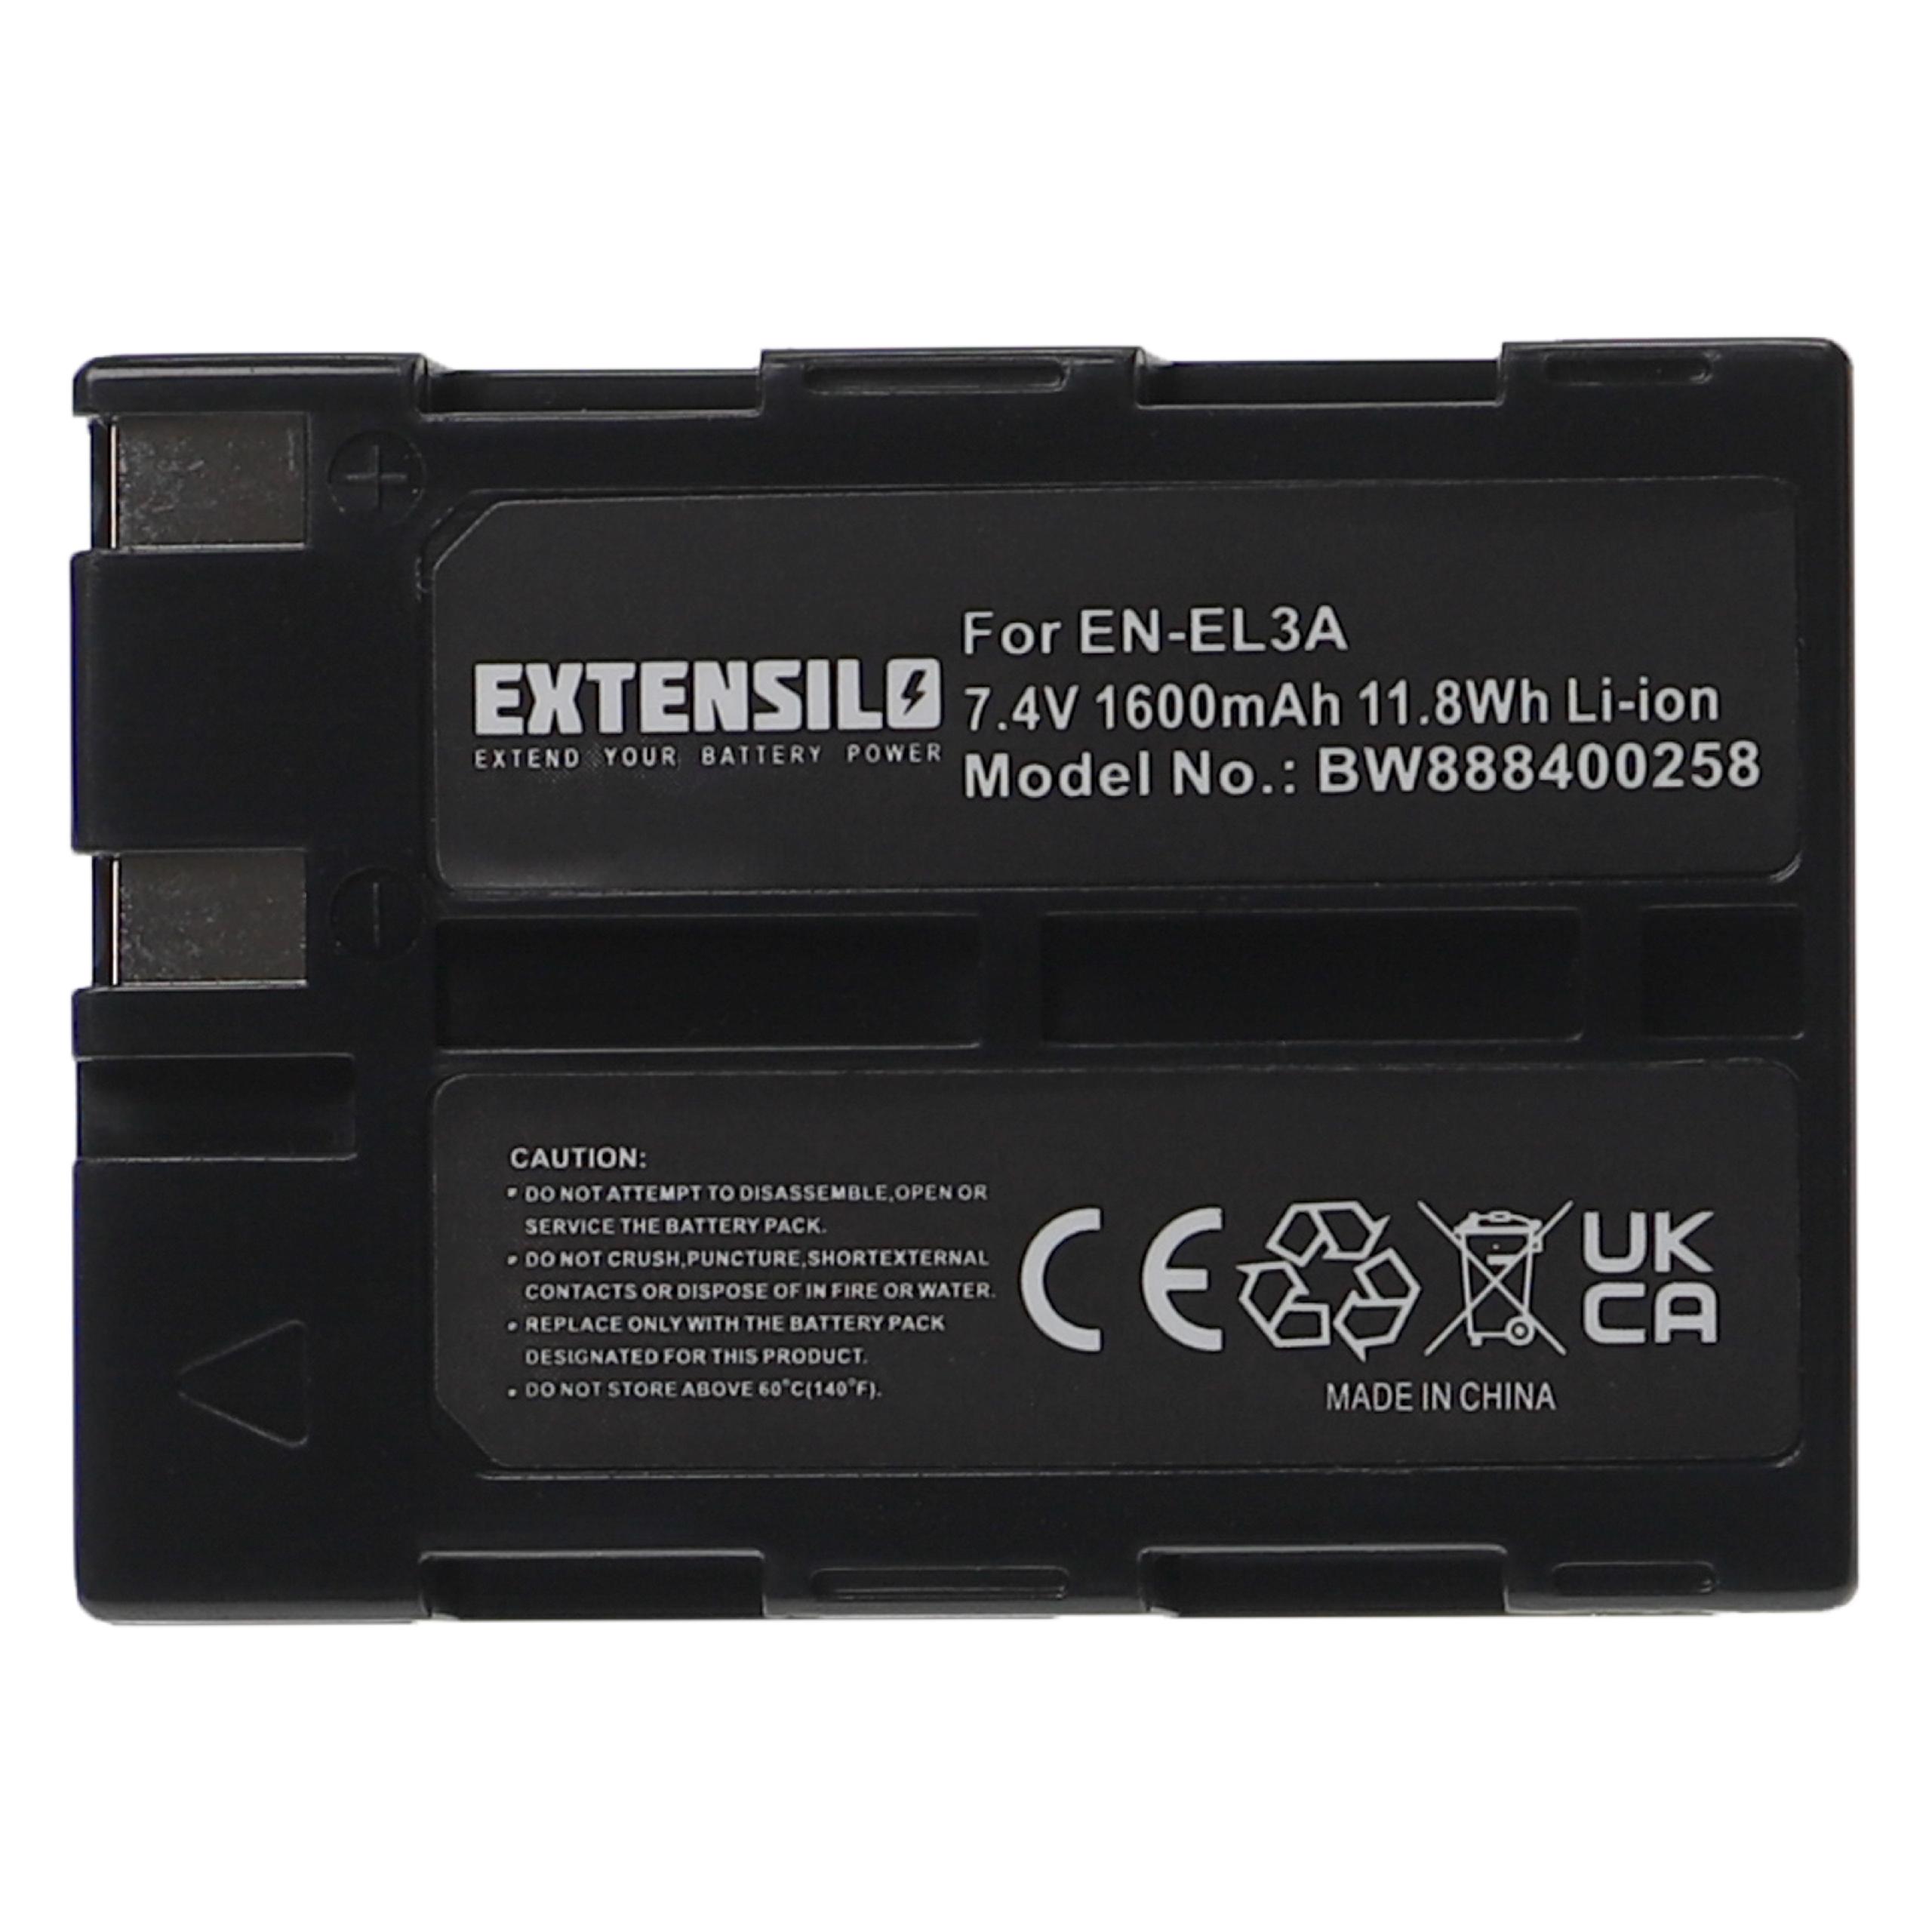 Batteria sostituisce Nikon EN-EL3, EN-EL3a per fotocamera Nikon - 1600mAh 7,4V Li-Ion